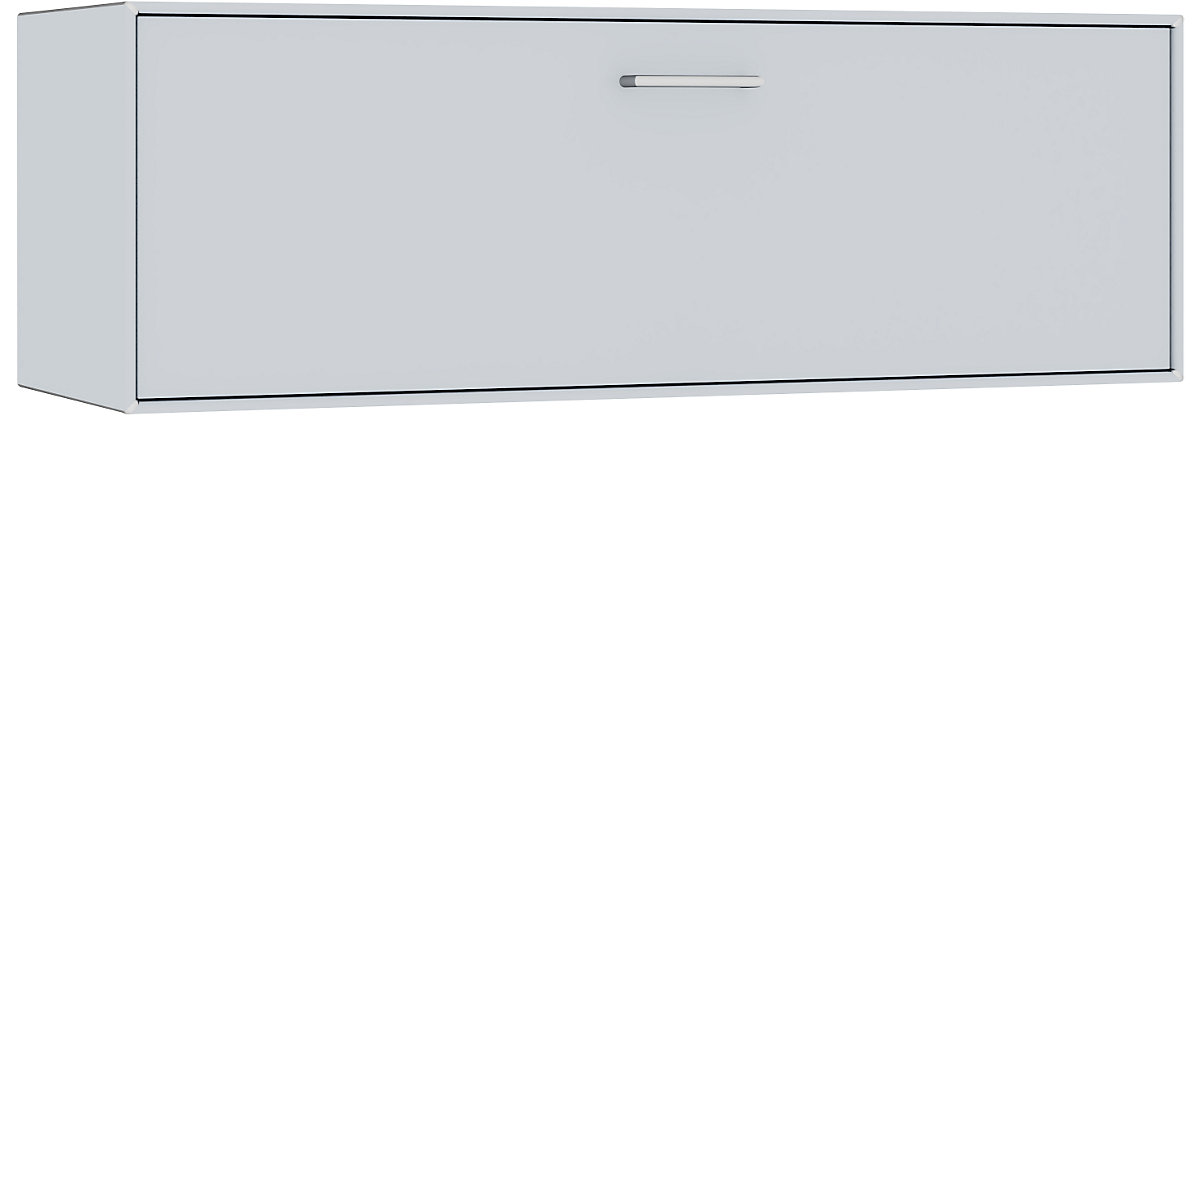 mauser – Cuie individuală, suspendată, 1 sertar, lățime 1155 mm, alb aluminiu